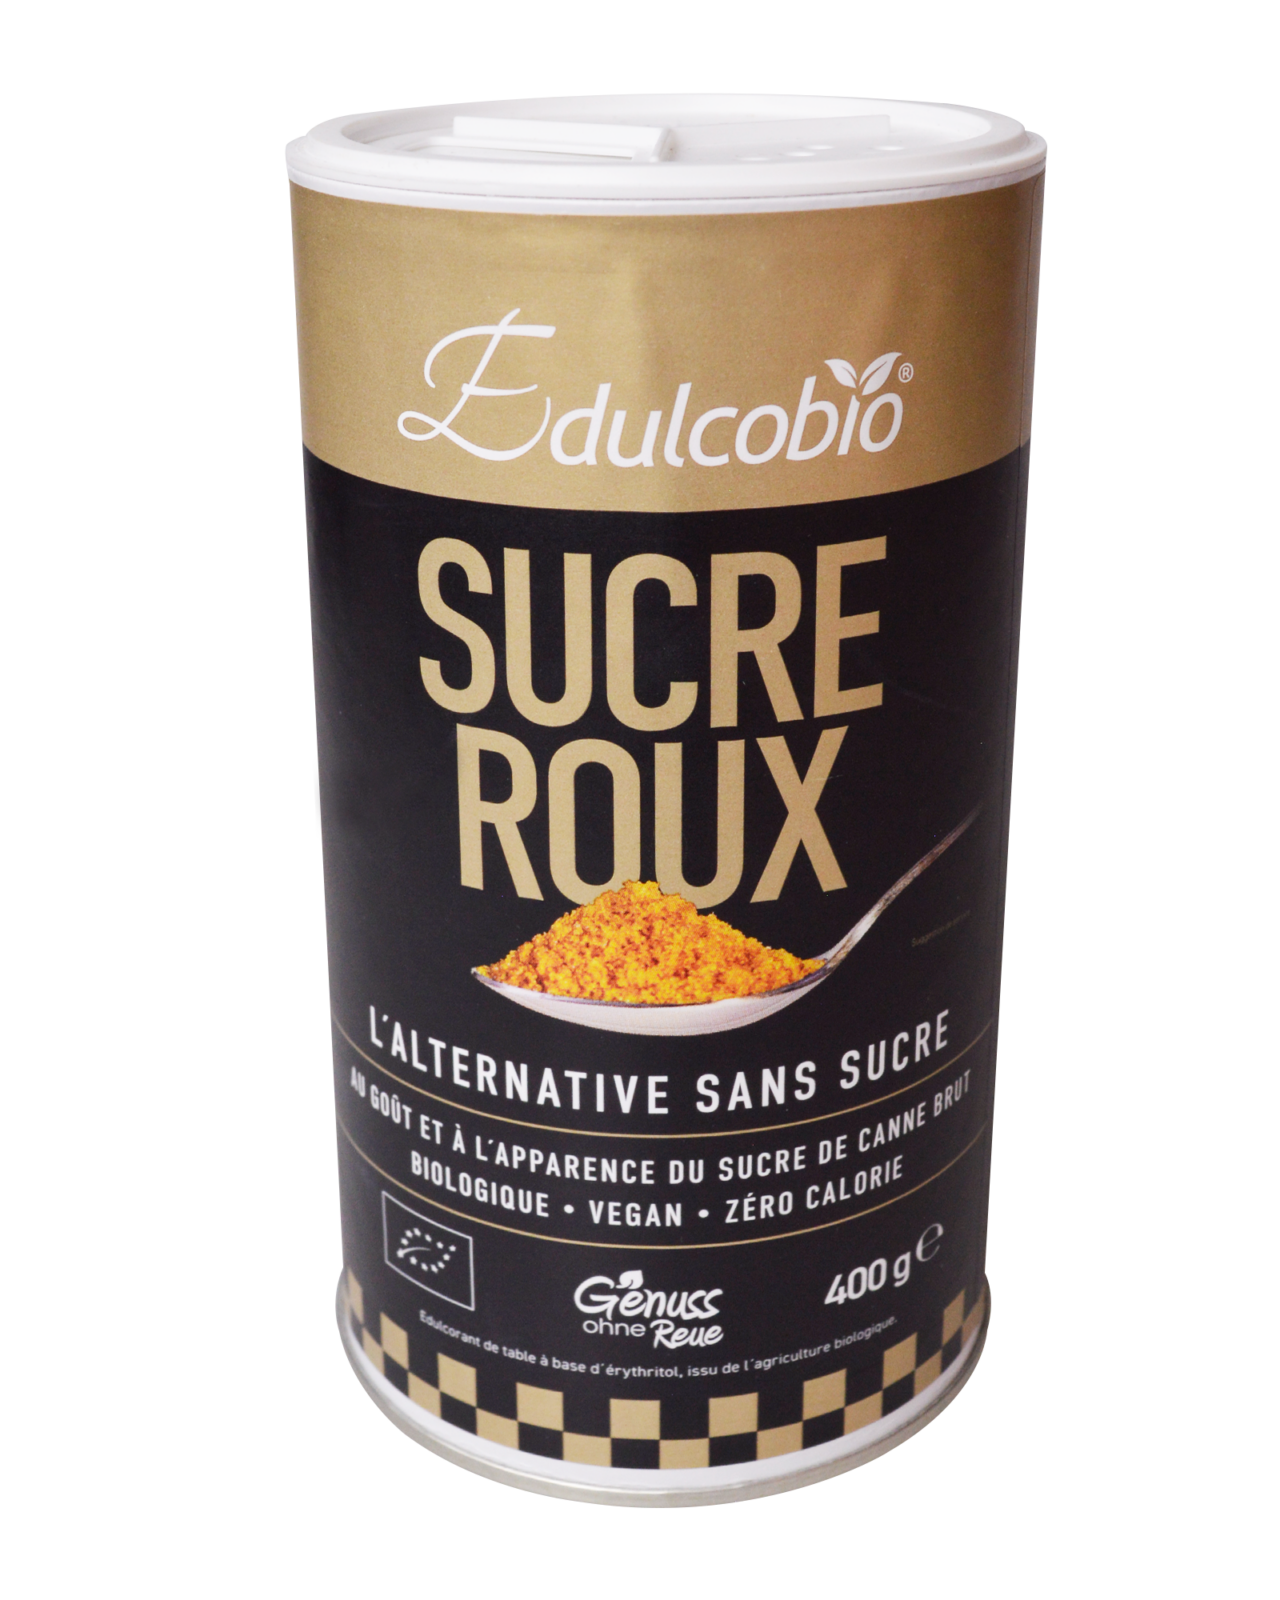 Edulcobio sucre roux - Edulcobio